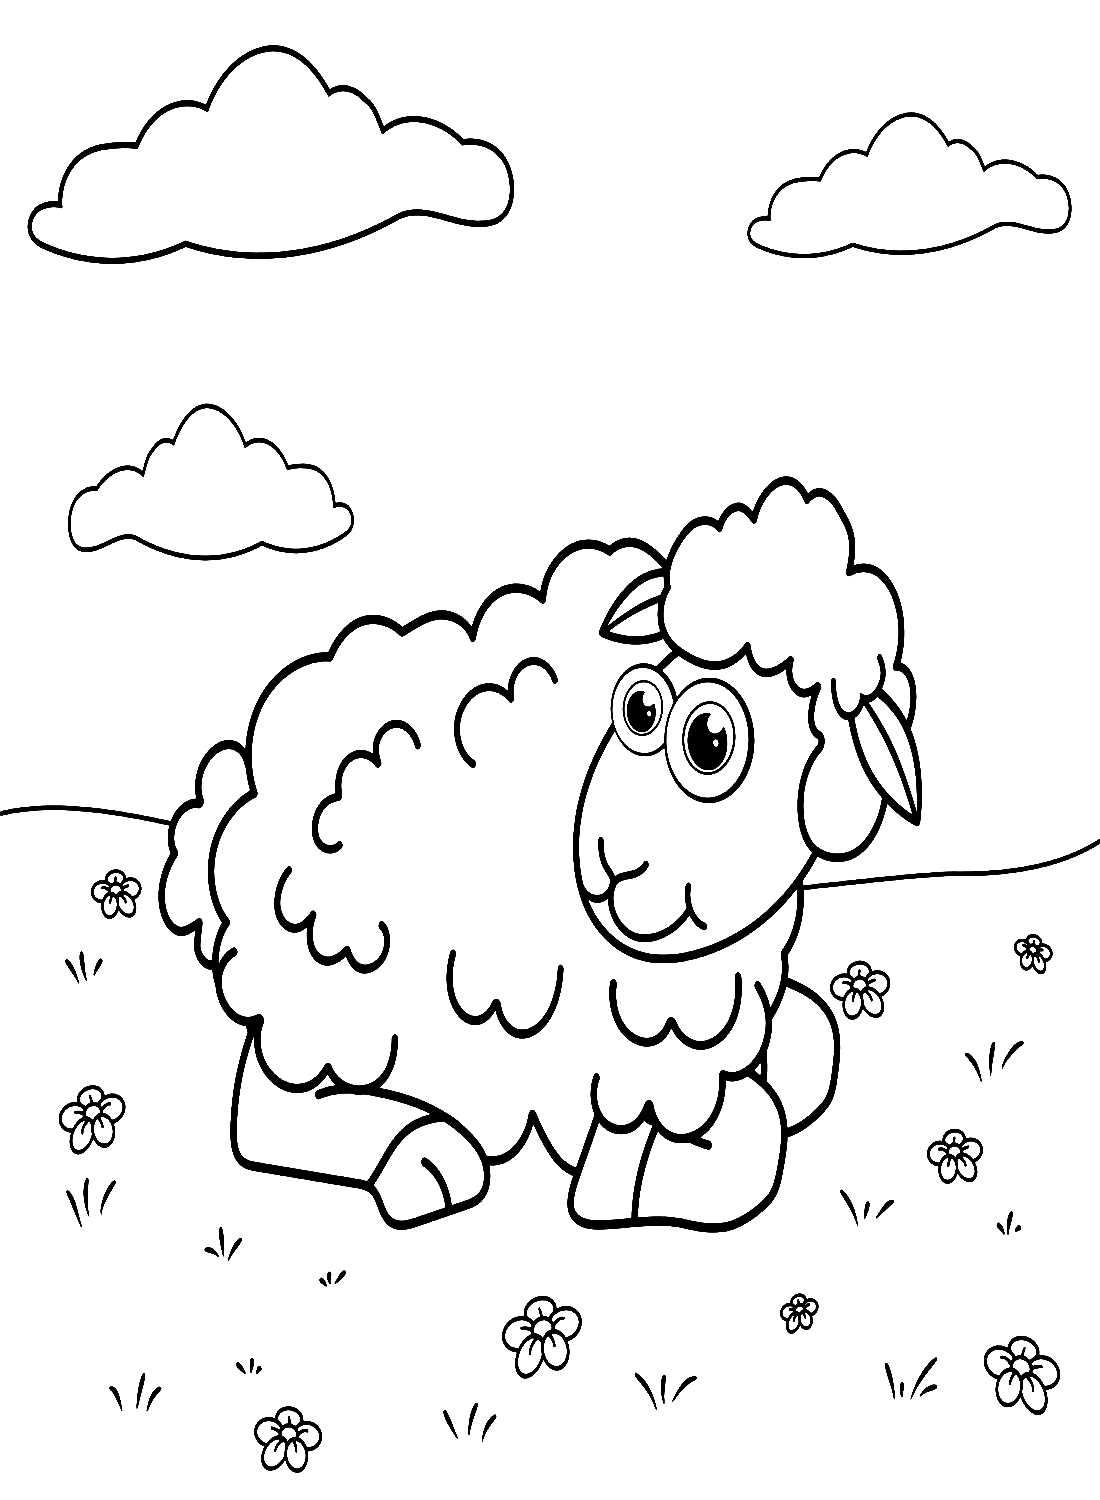 Lam liggend op het gras from Lamb